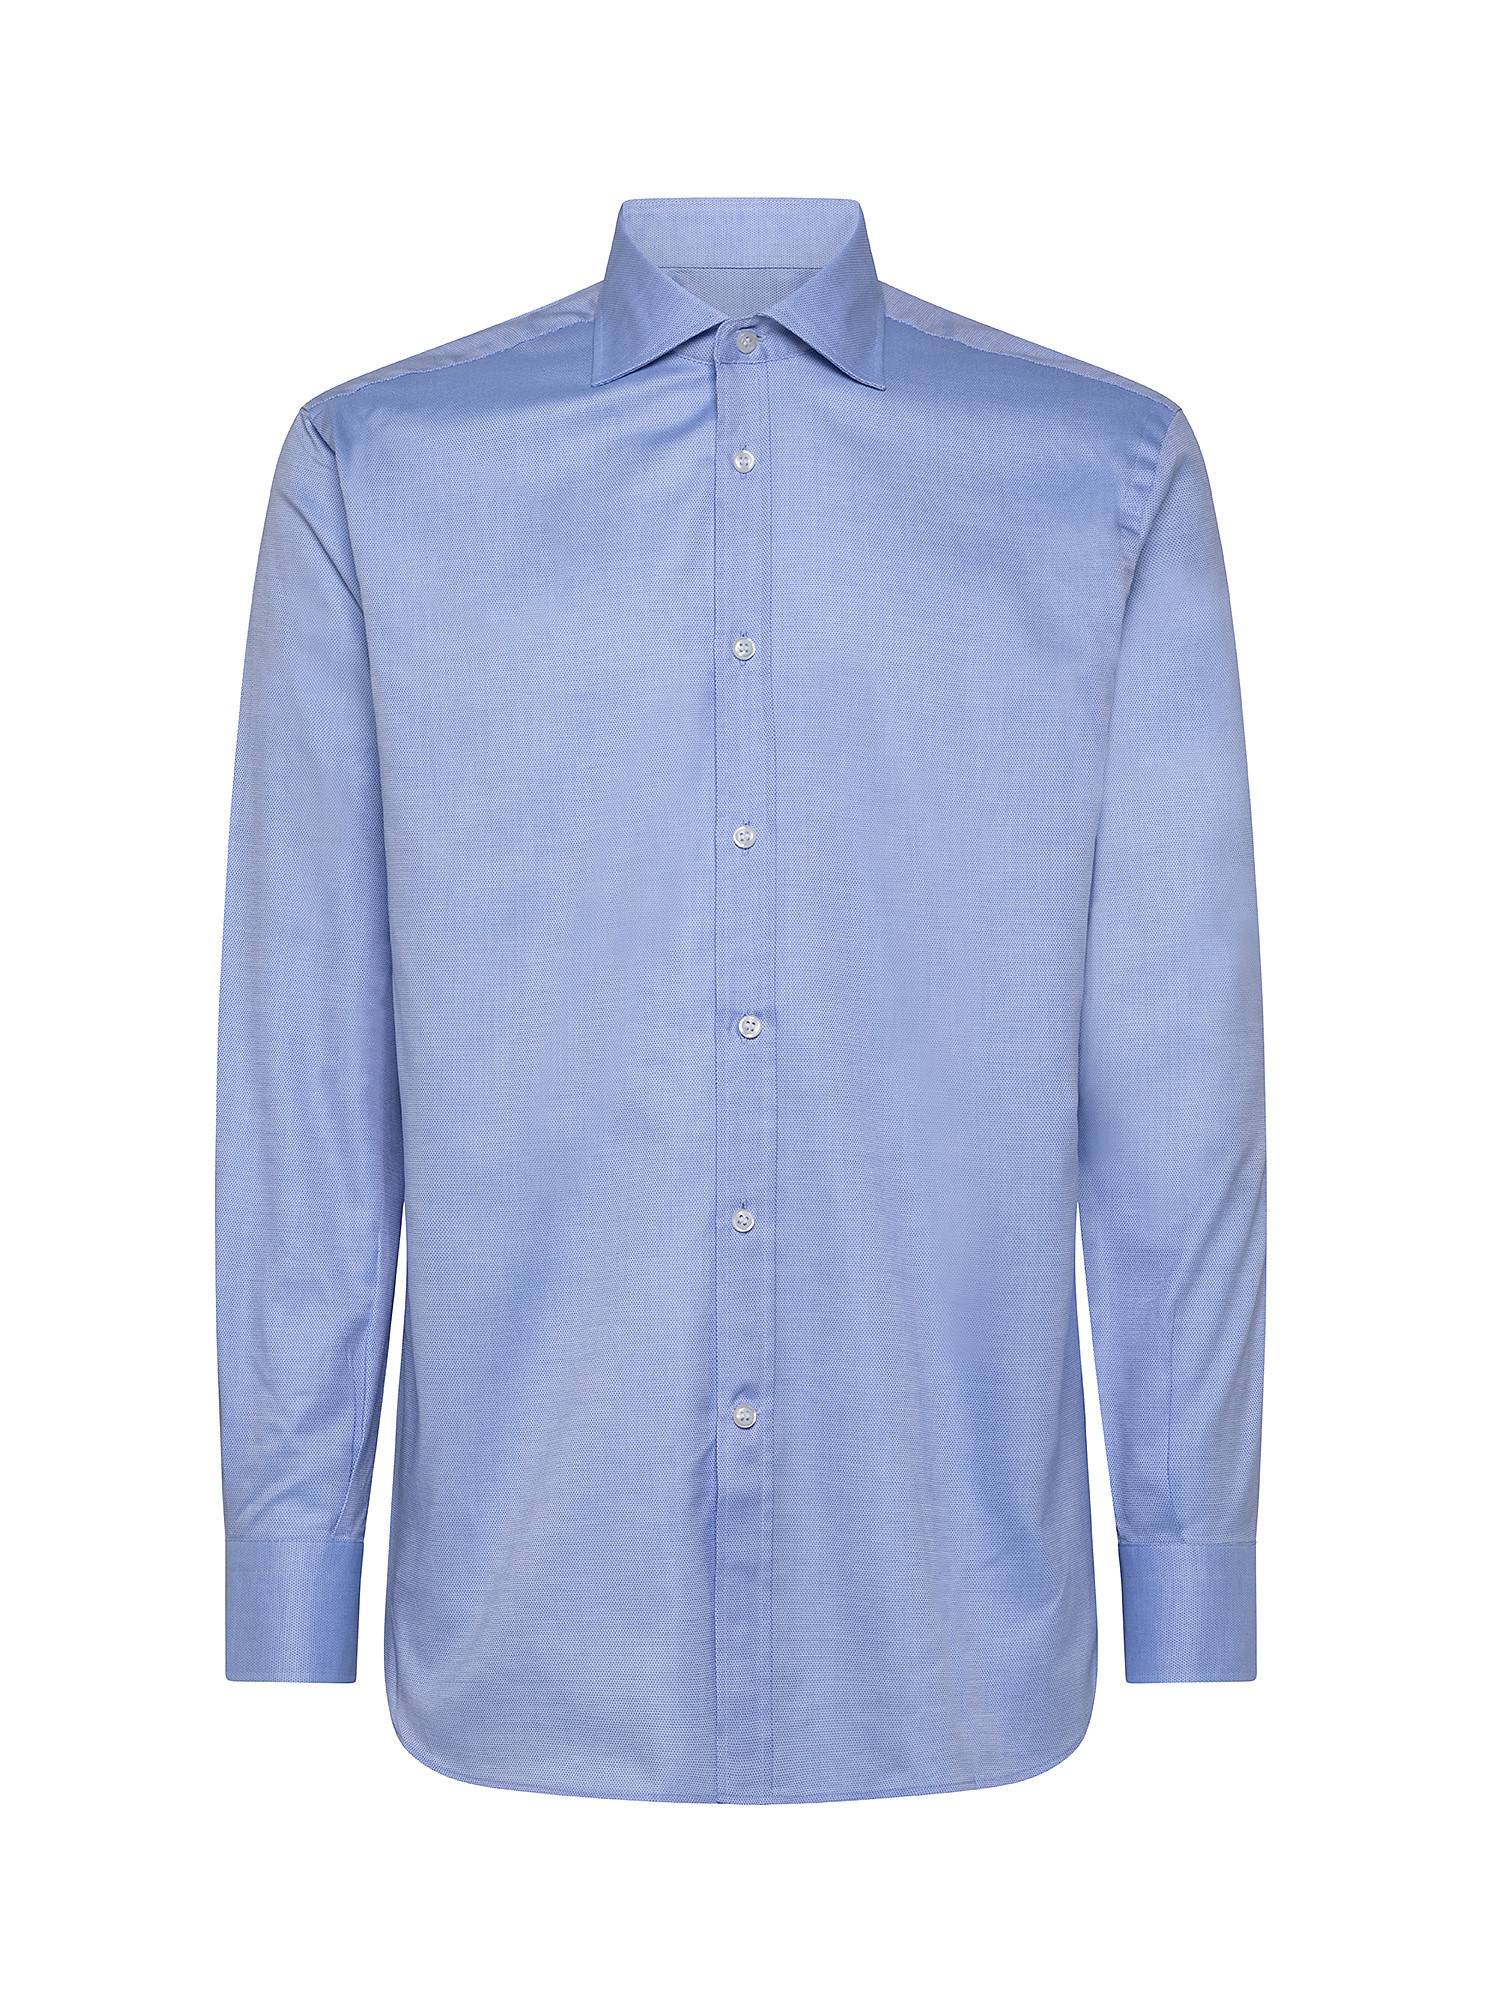 Camicia regular fit cotone armaturato, Azzurro, large